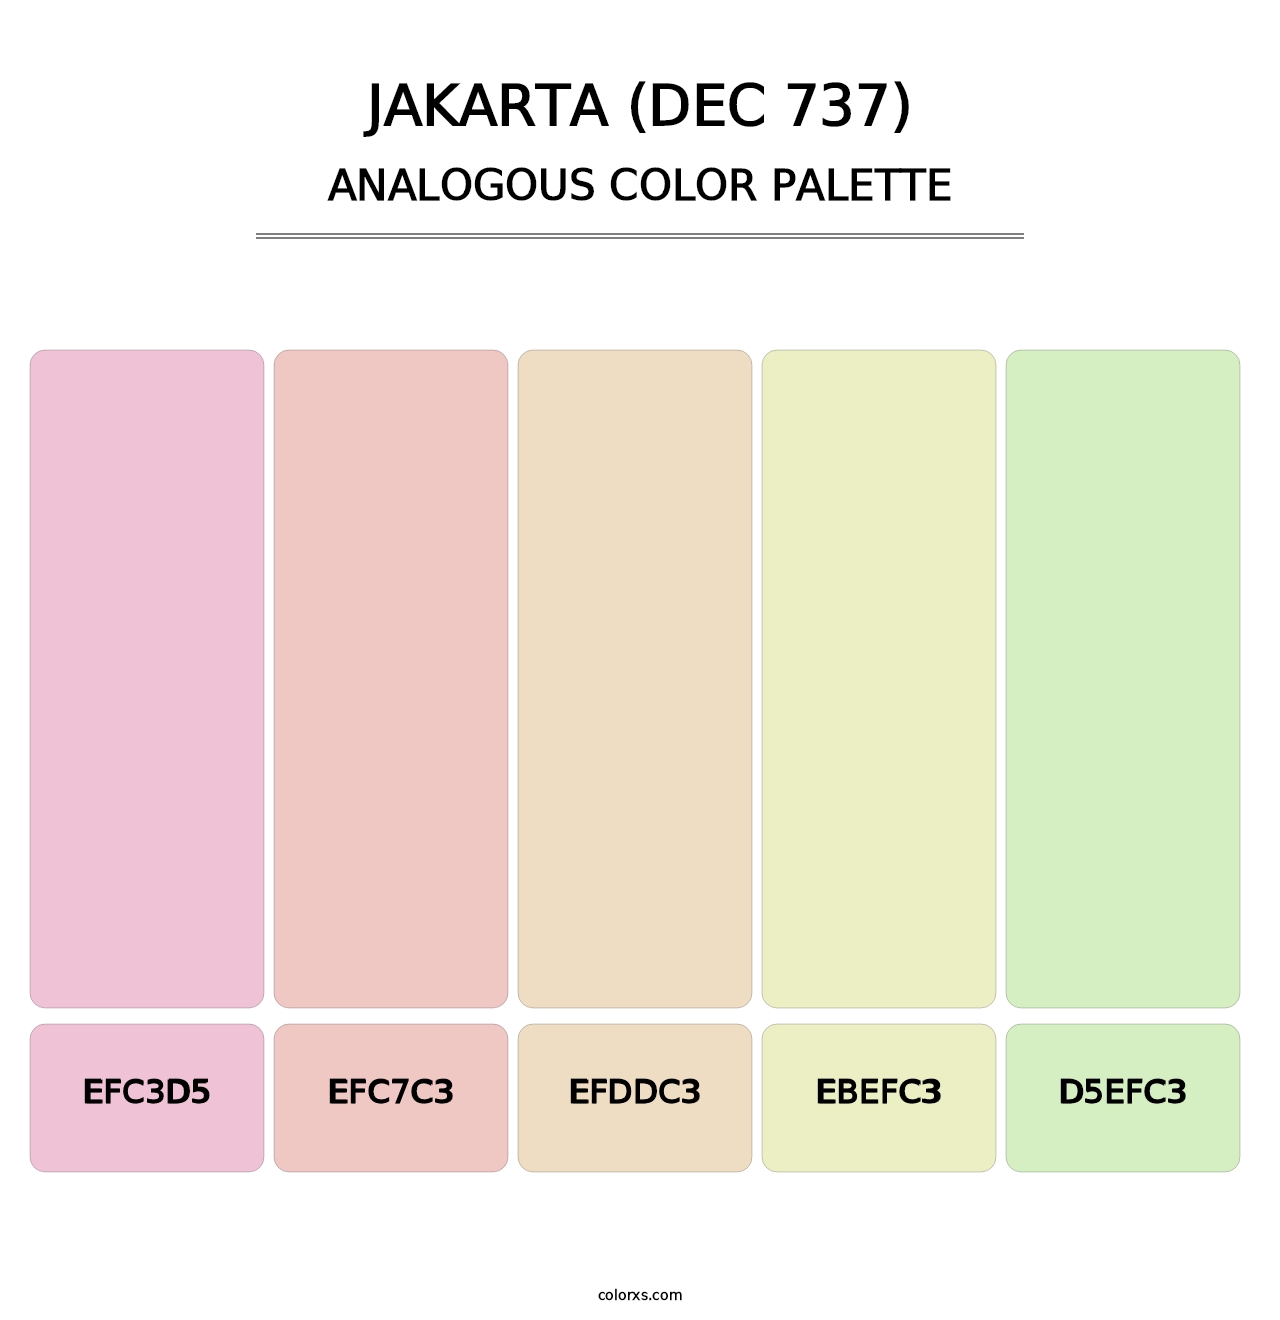 Jakarta (DEC 737) - Analogous Color Palette